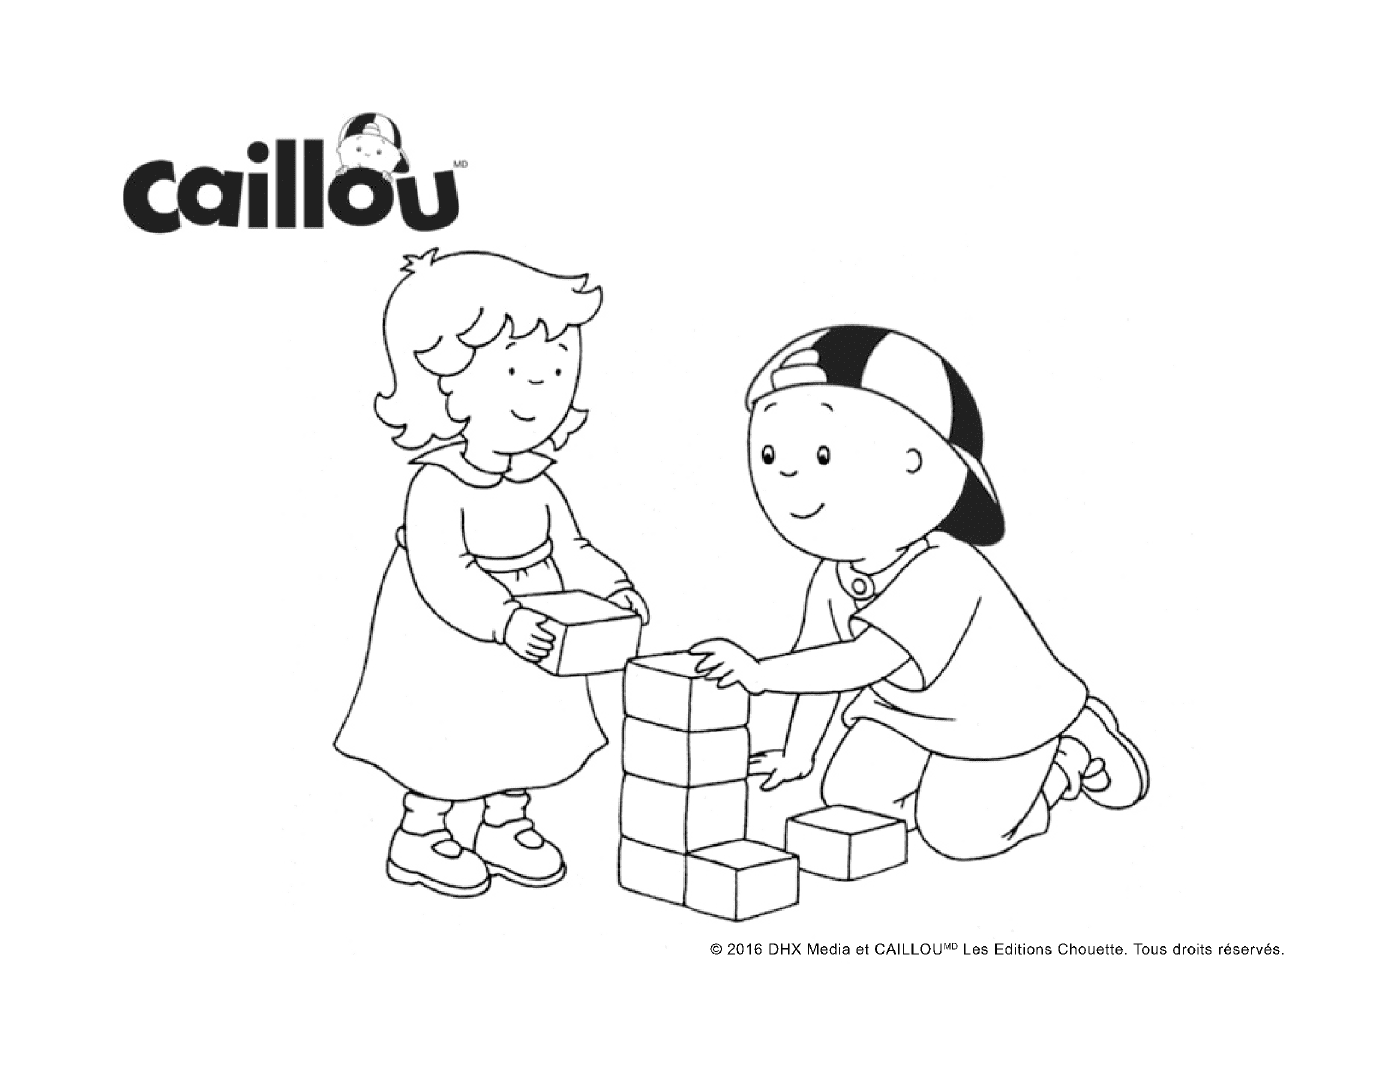   Jeu de blocs avec Caillou et sa petite sœur 